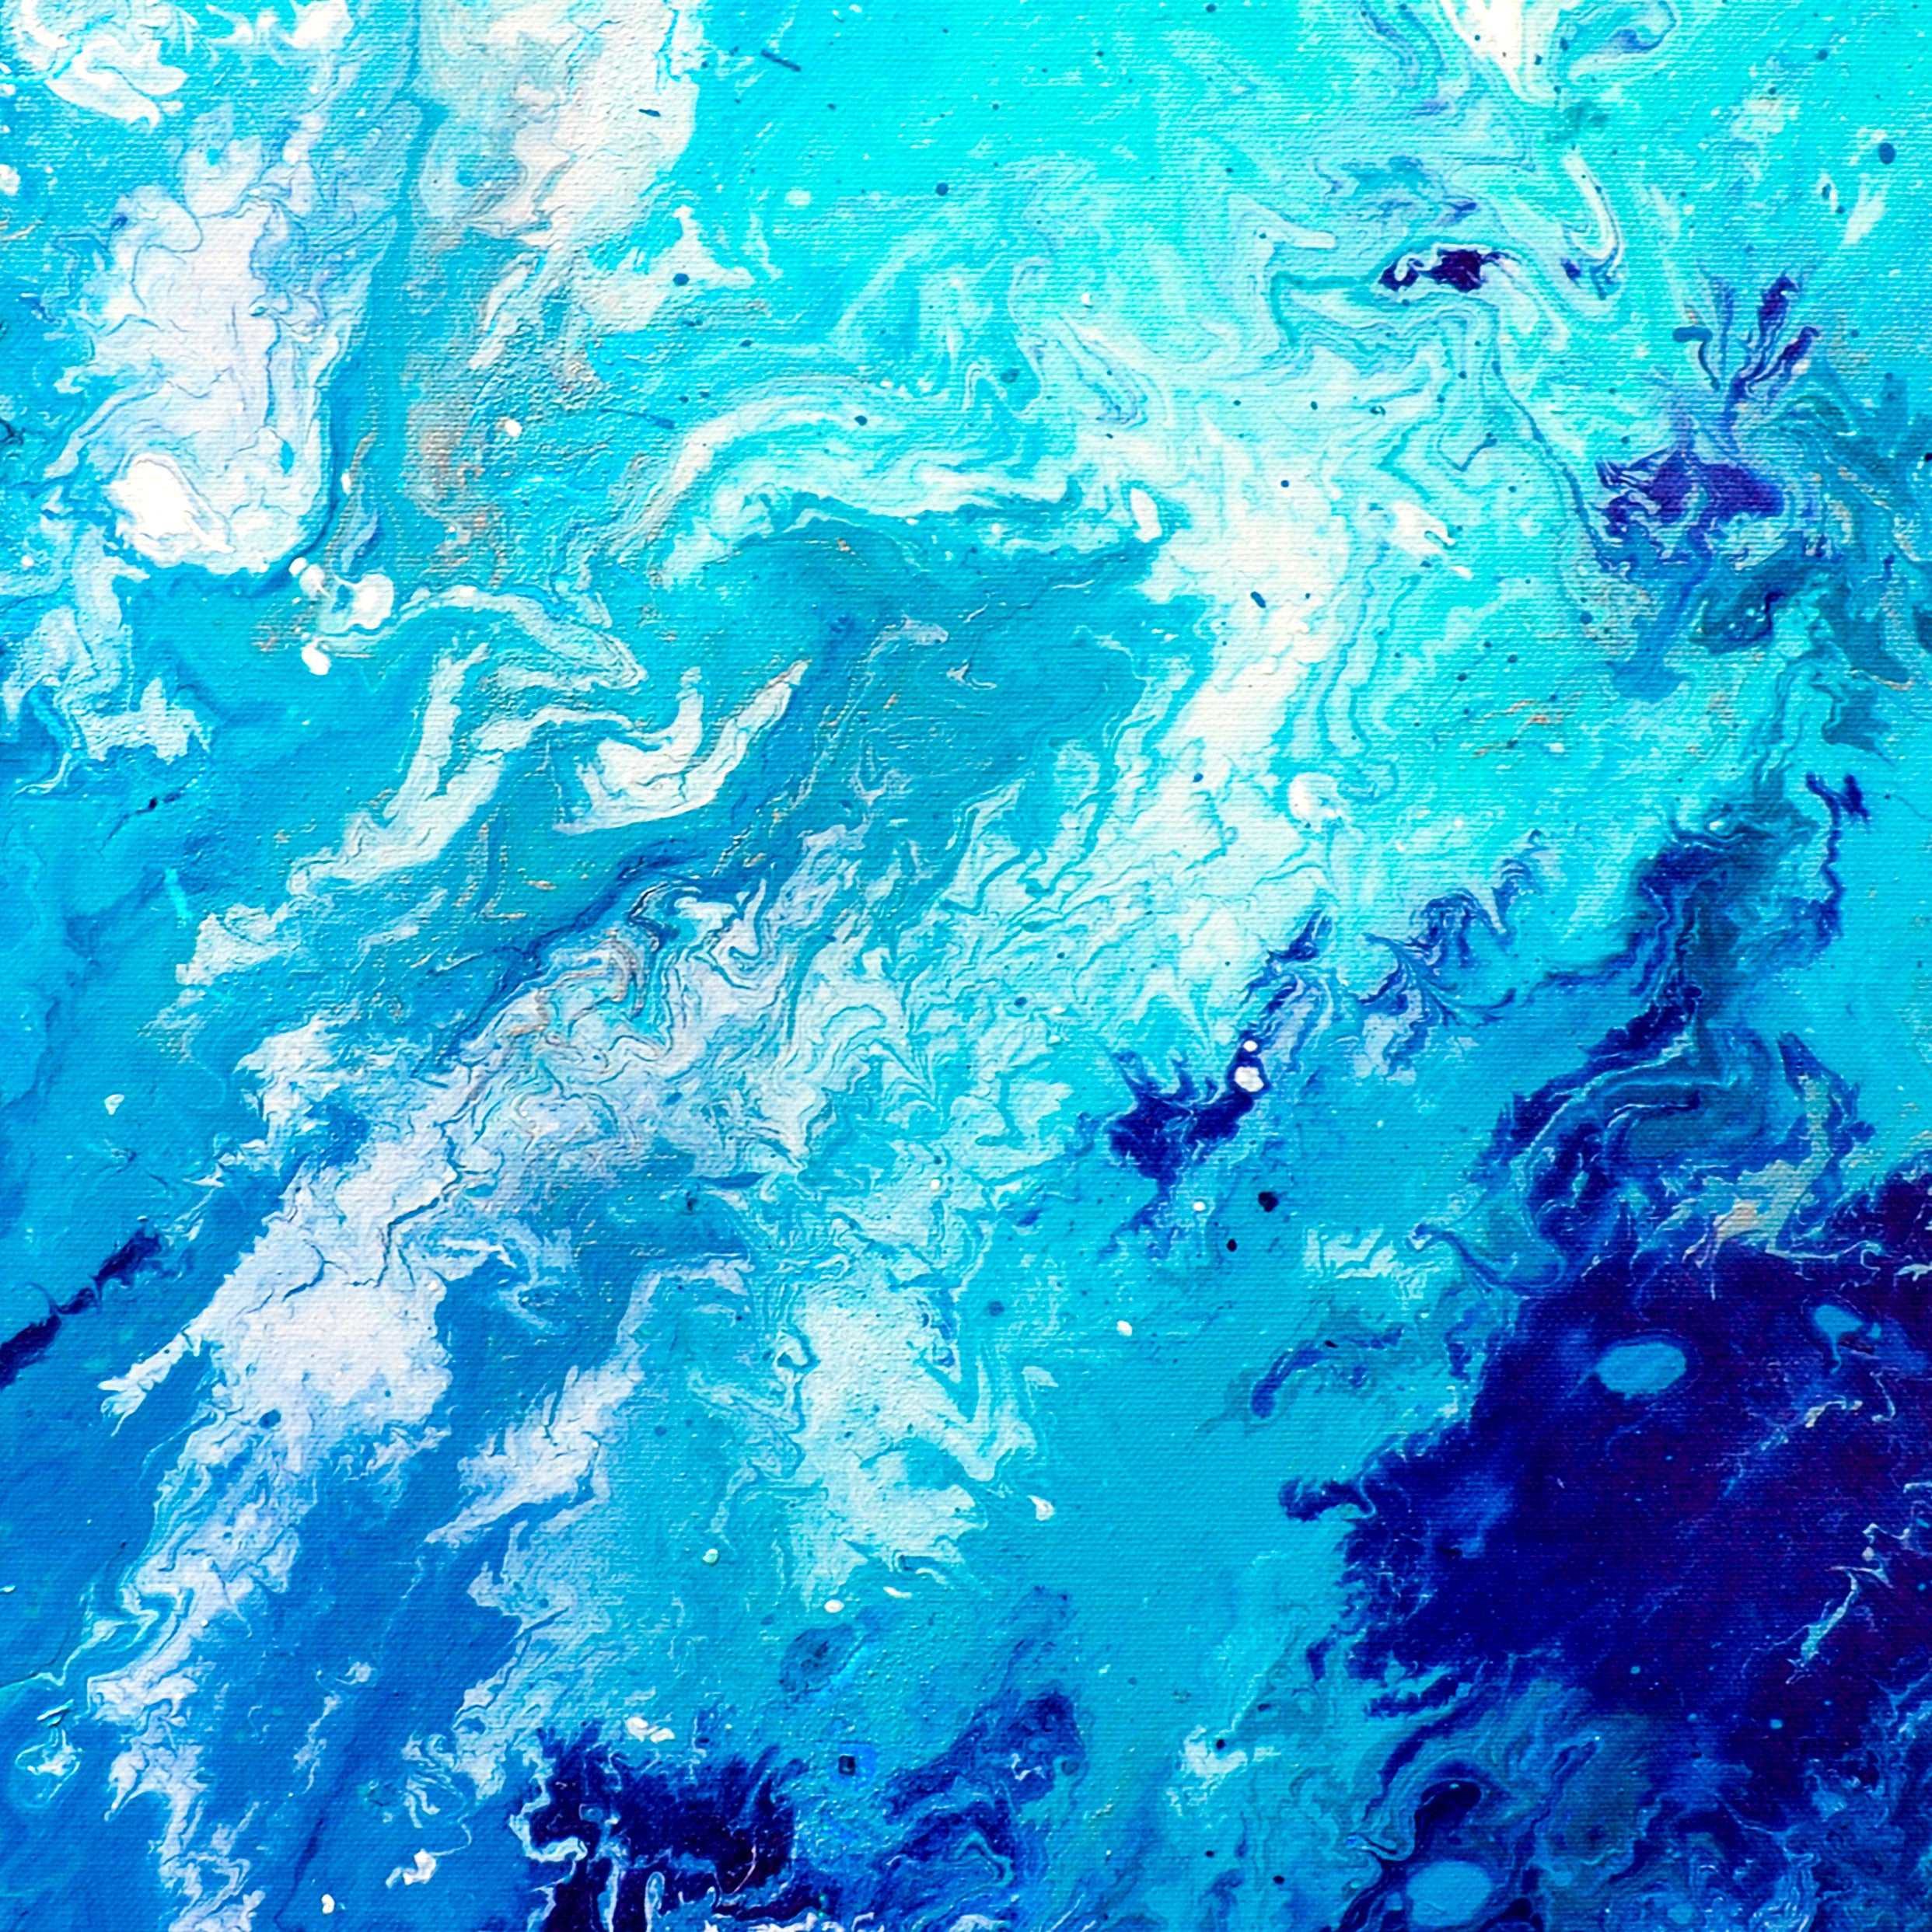 'Drift Away' Fluid Art Blue Canvas Print